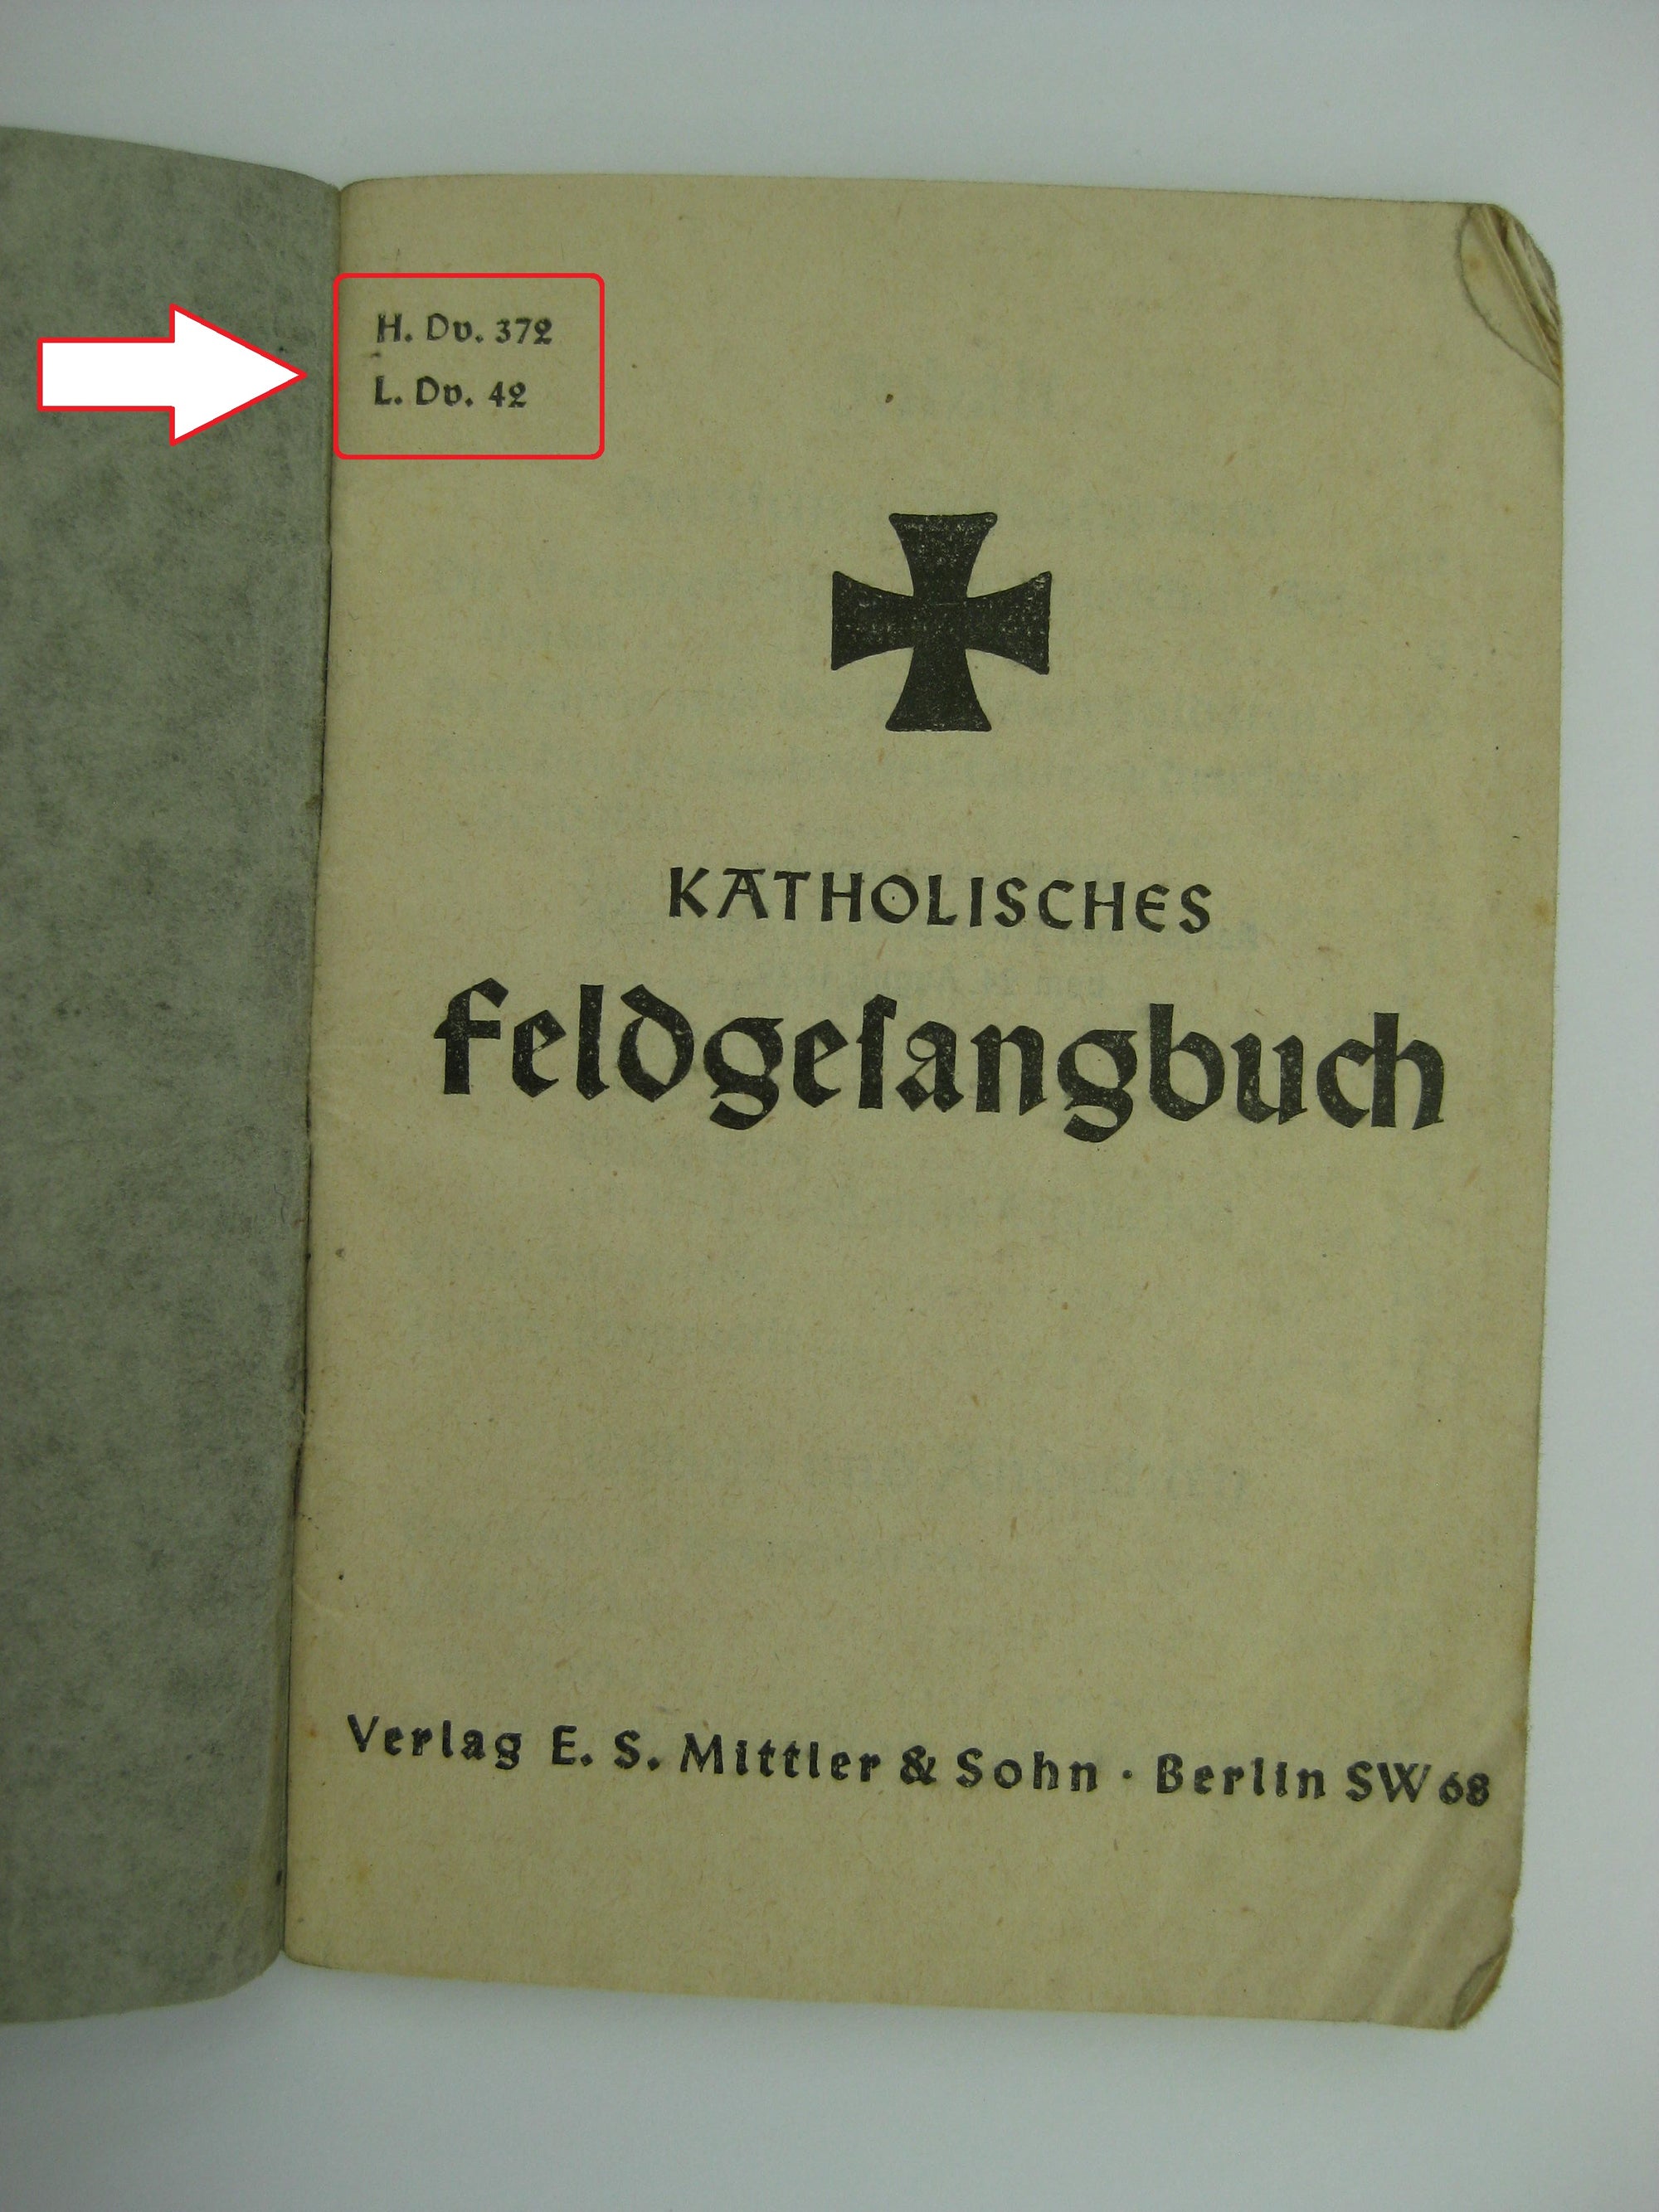 Katholisches Feldgesangbuch Deutschland 2.Weltkrieg 3.Reich